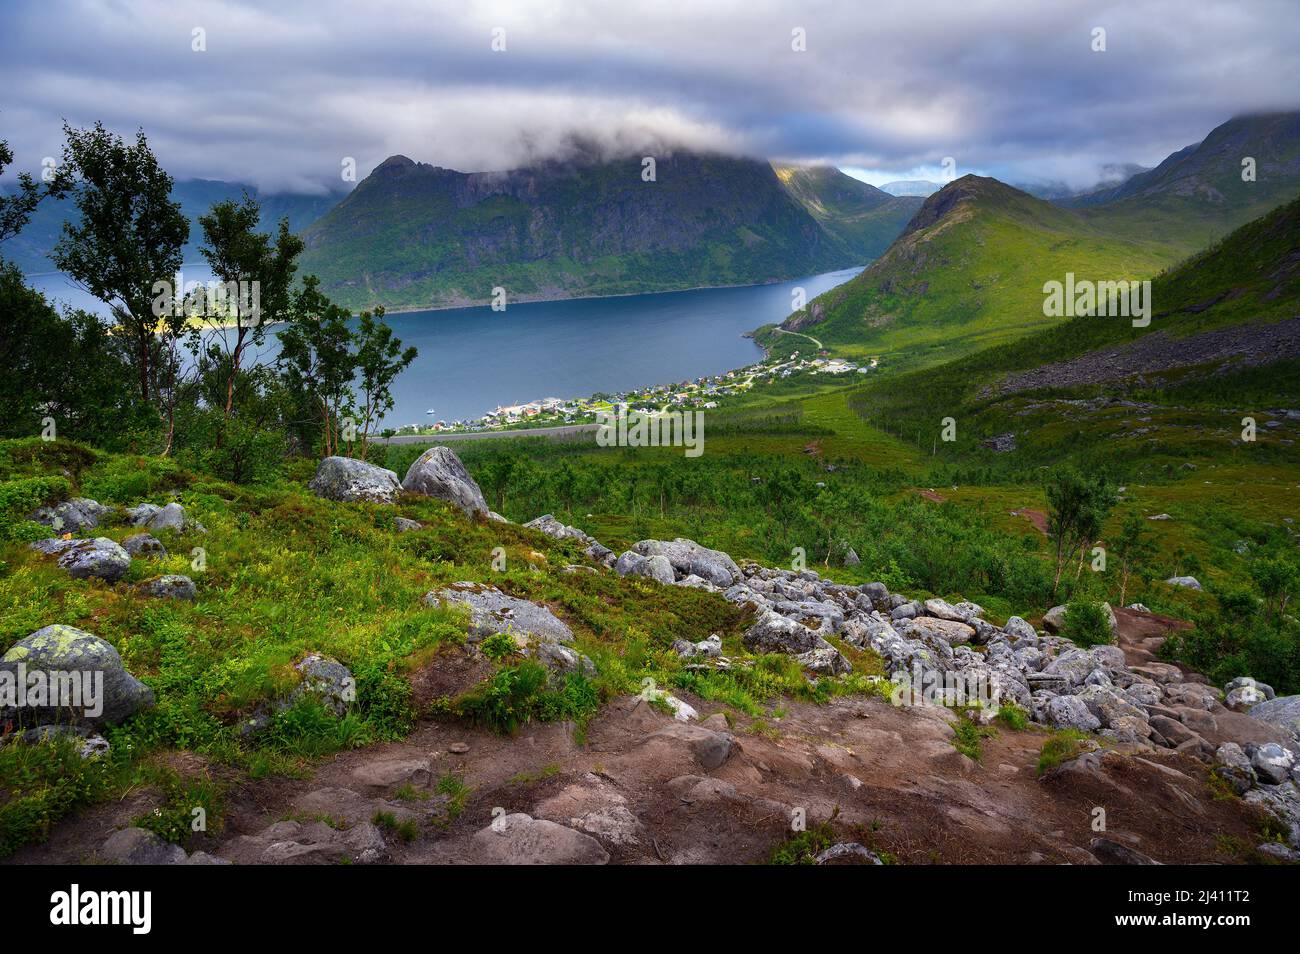 Fjordgard villaggio da Hesten sentiero per Segla montagna sull'isola di Senja, Norvegia Foto Stock